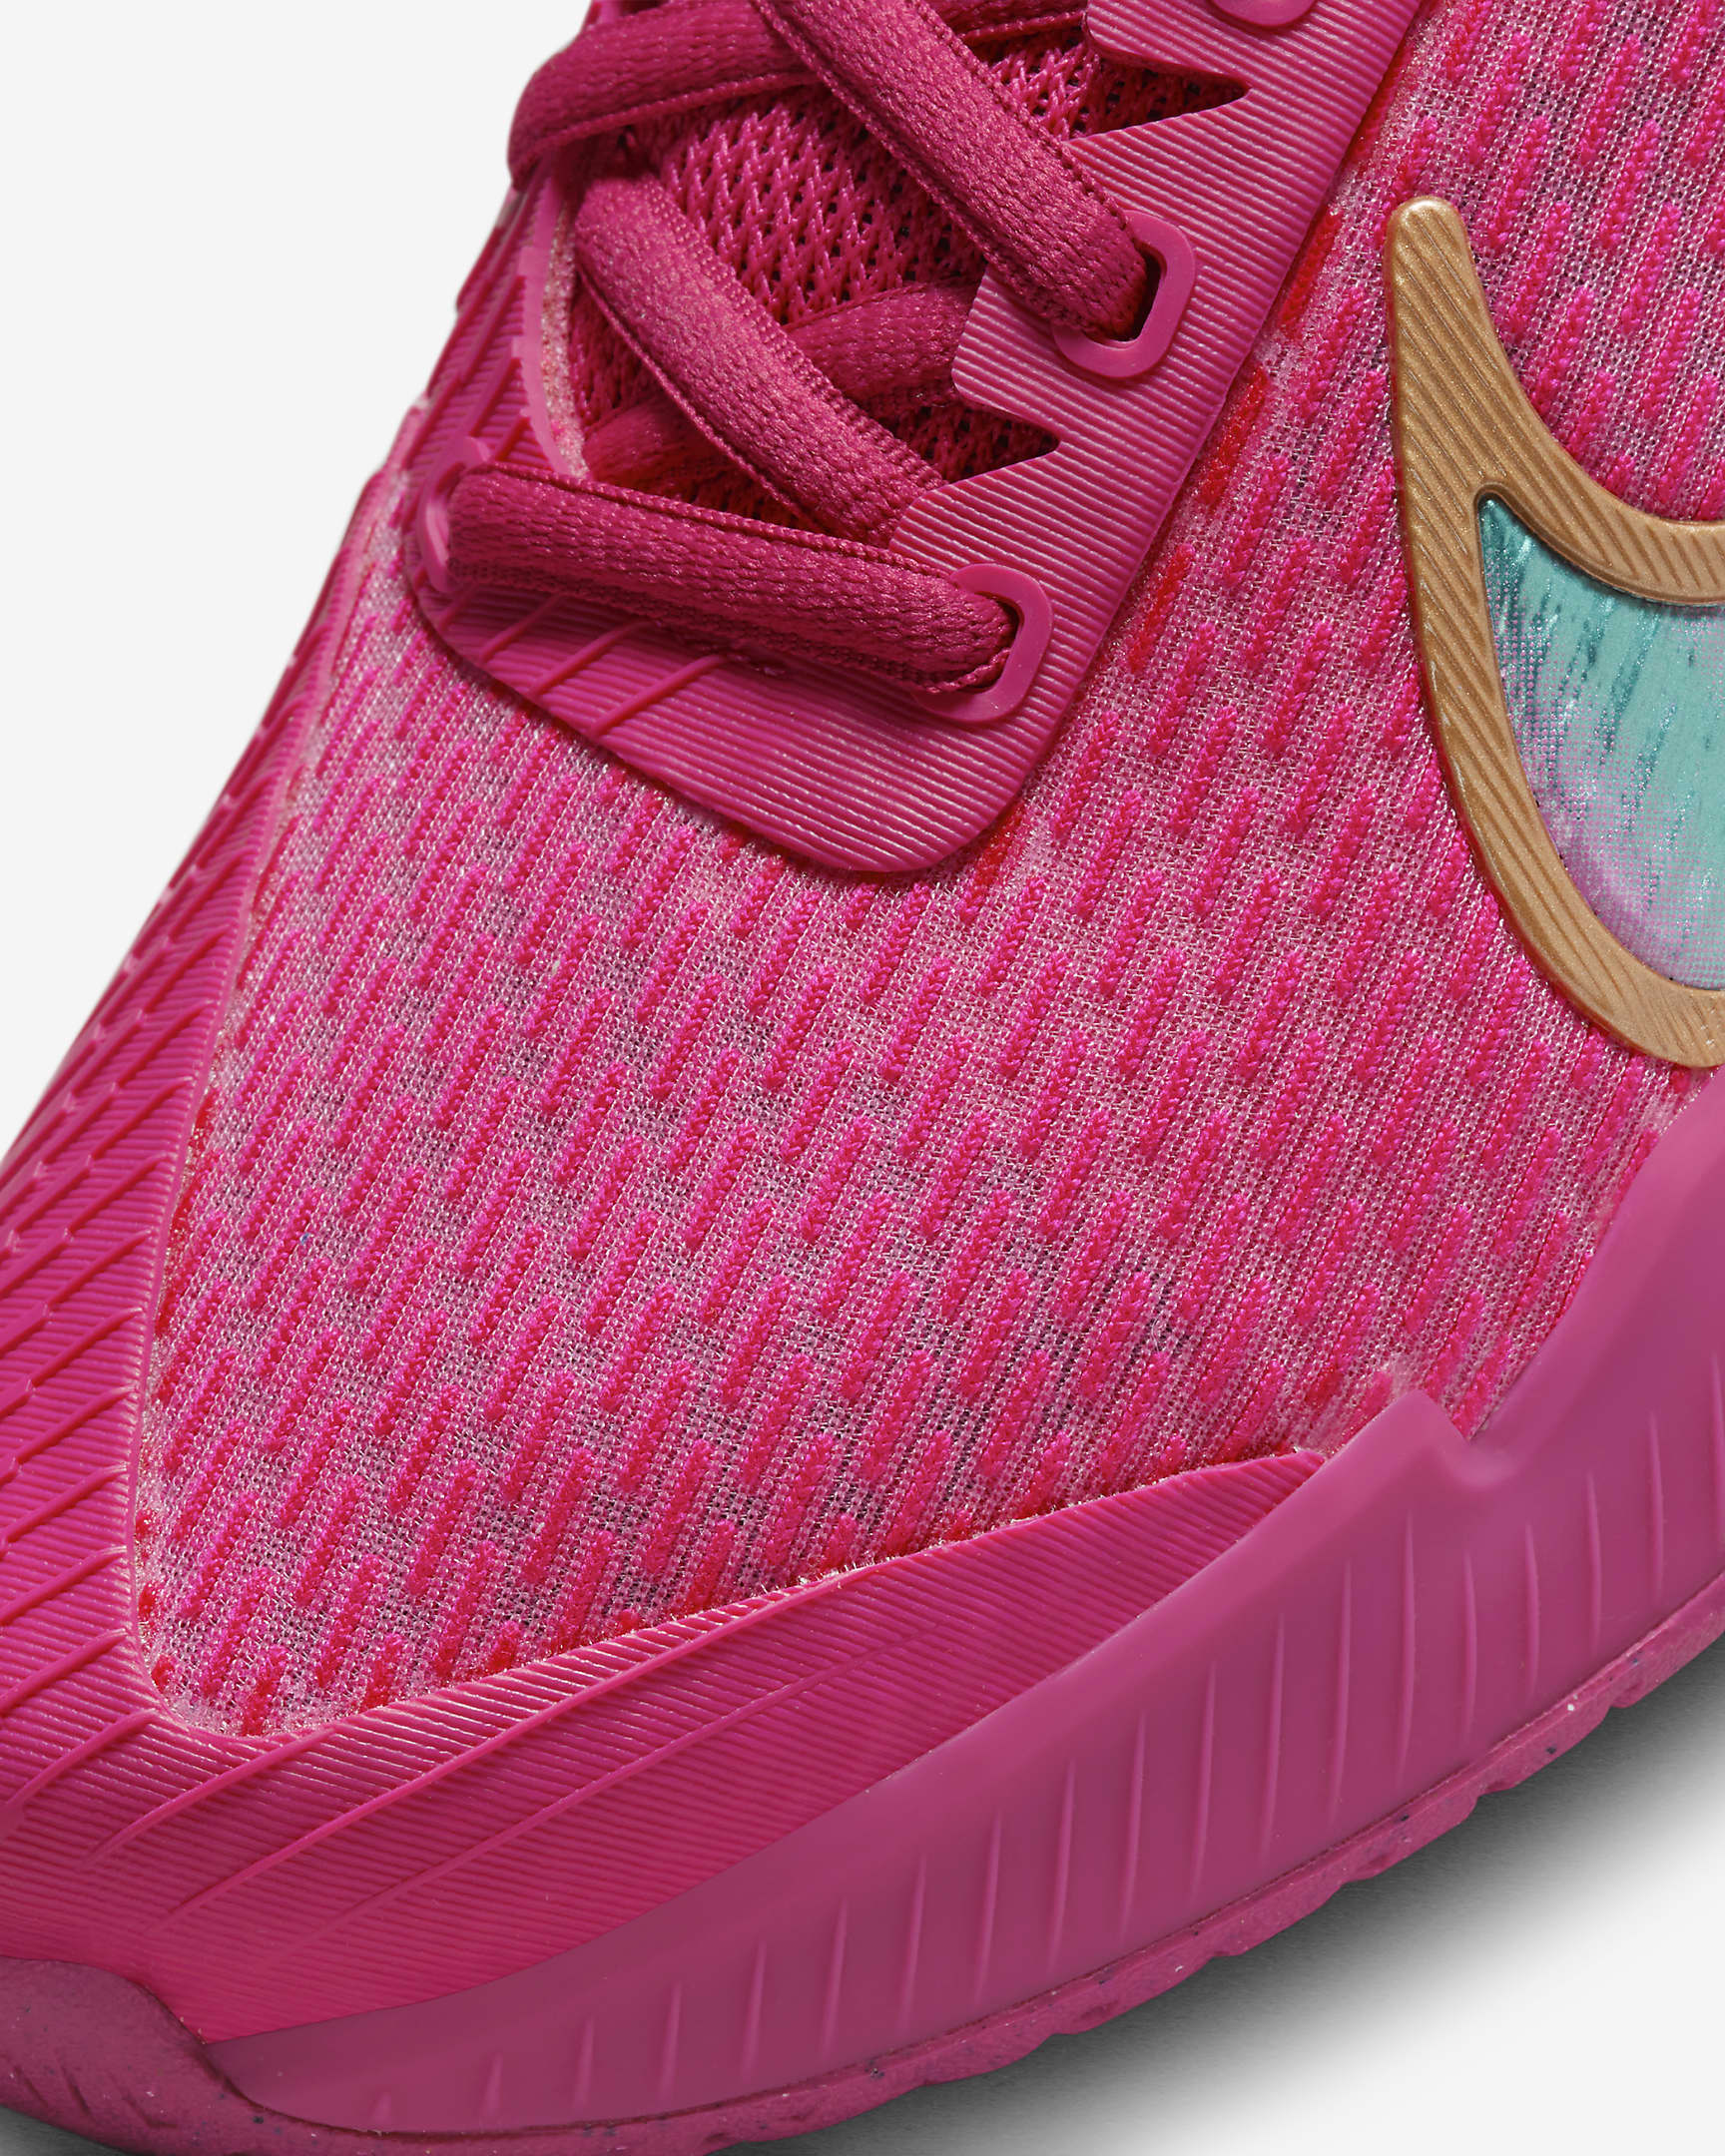 NikeCourt Air Zoom Vapor Pro 2 Premium Women #39 s Hard Court Tennis Shoes